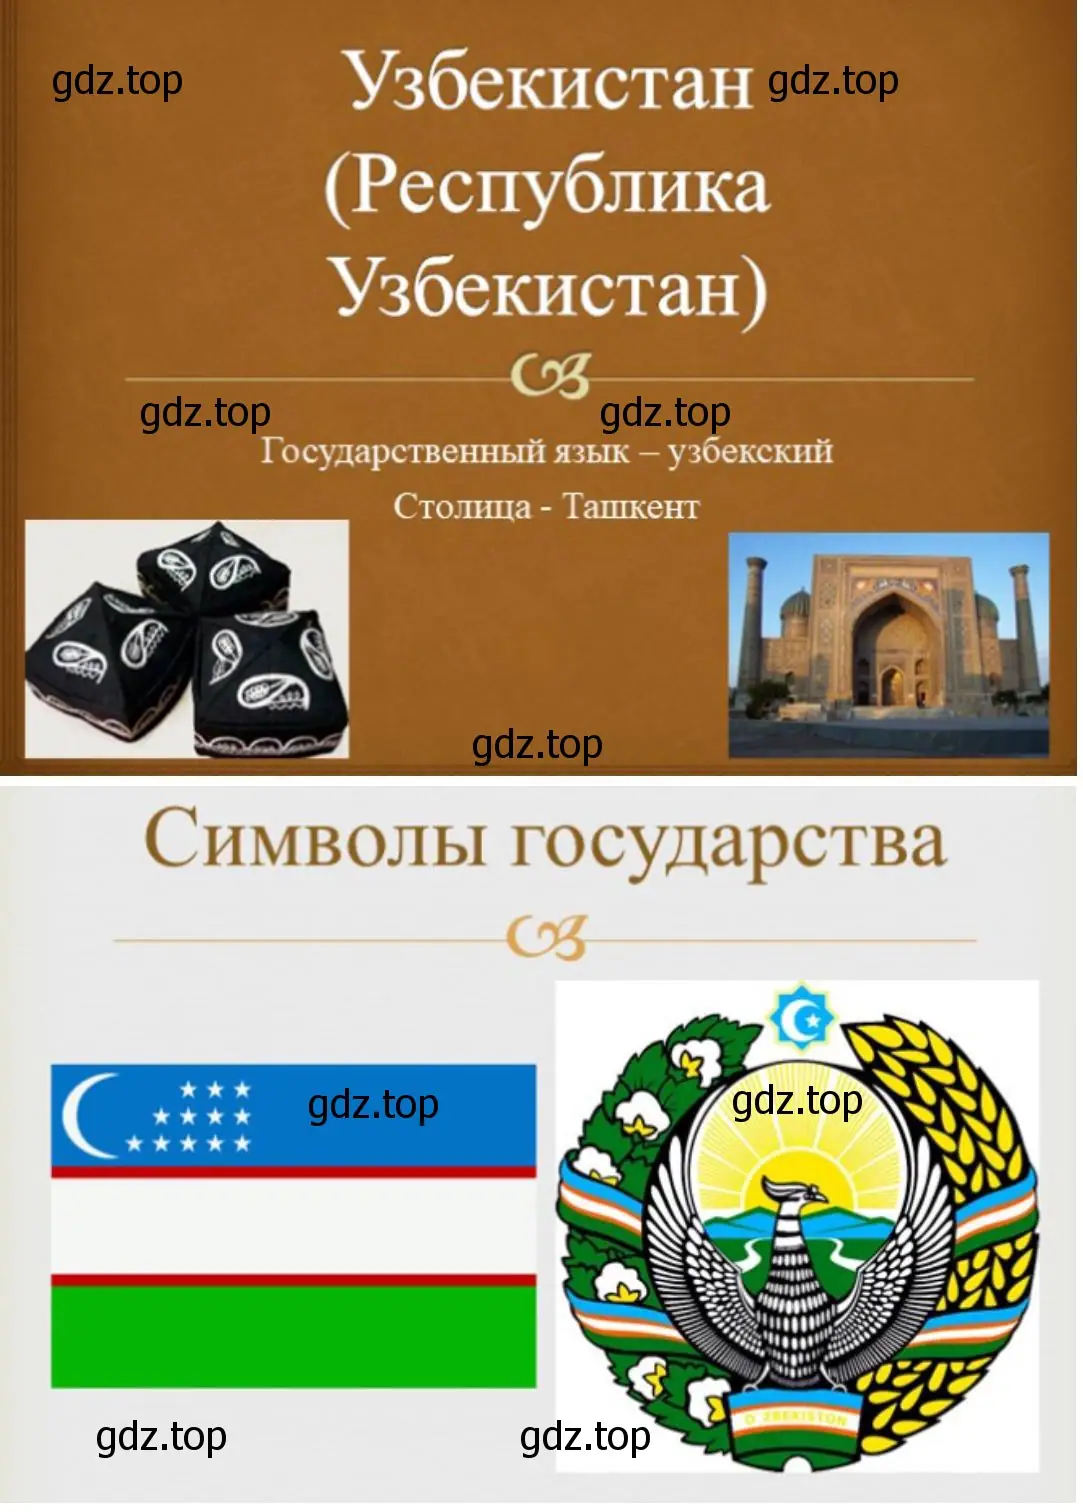 Презентация об одной из стран Центральной Азии «Узбекистан»